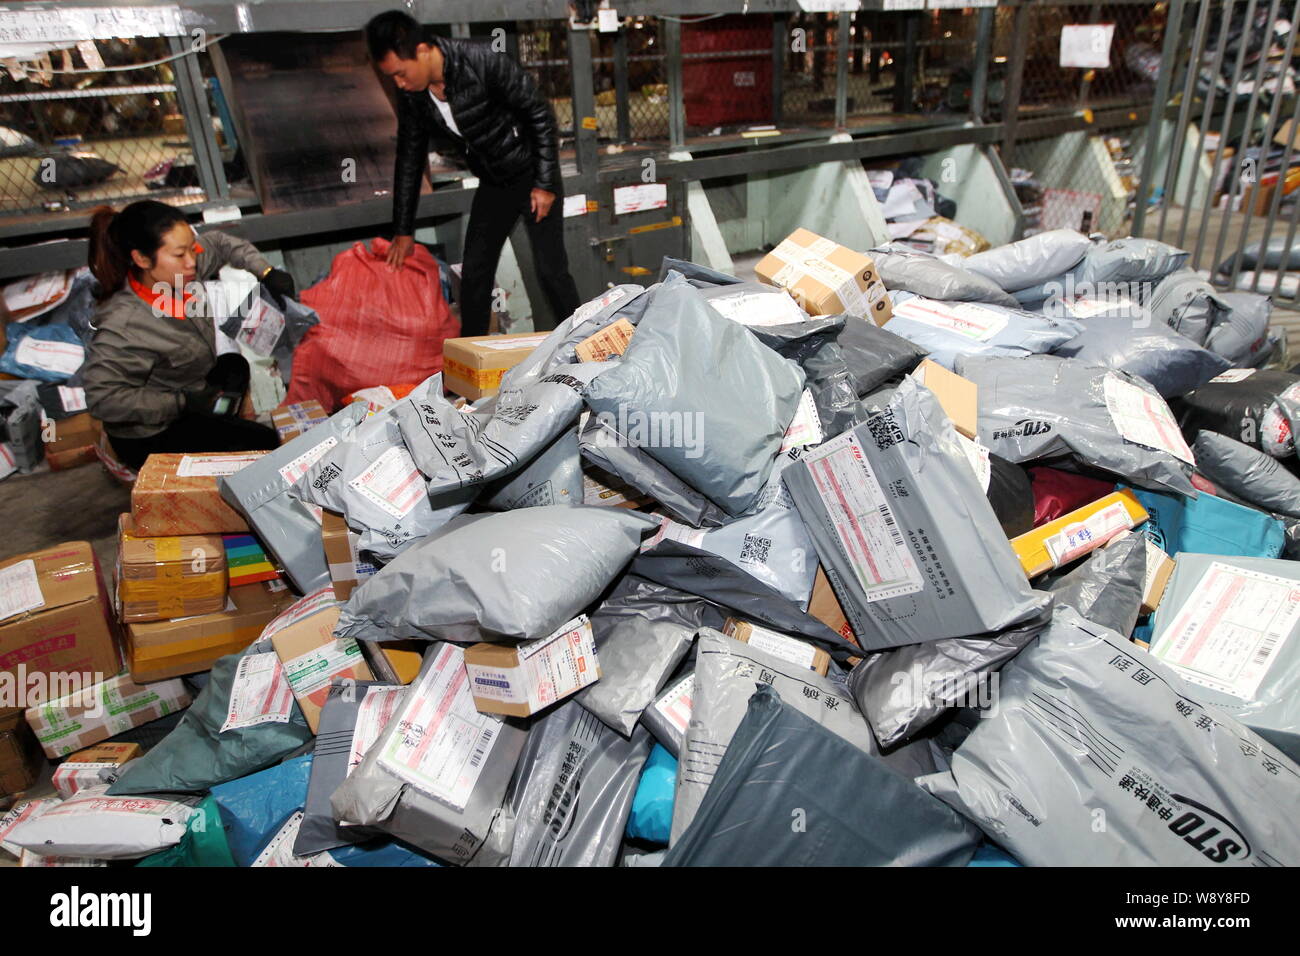 Chinesische Arbeiter sortieren Pakete, von denen die meisten aus online  einkaufen, bei einer Distribution Center von STO Express in Nantong City,  East China Jiangsu pr Stockfotografie - Alamy